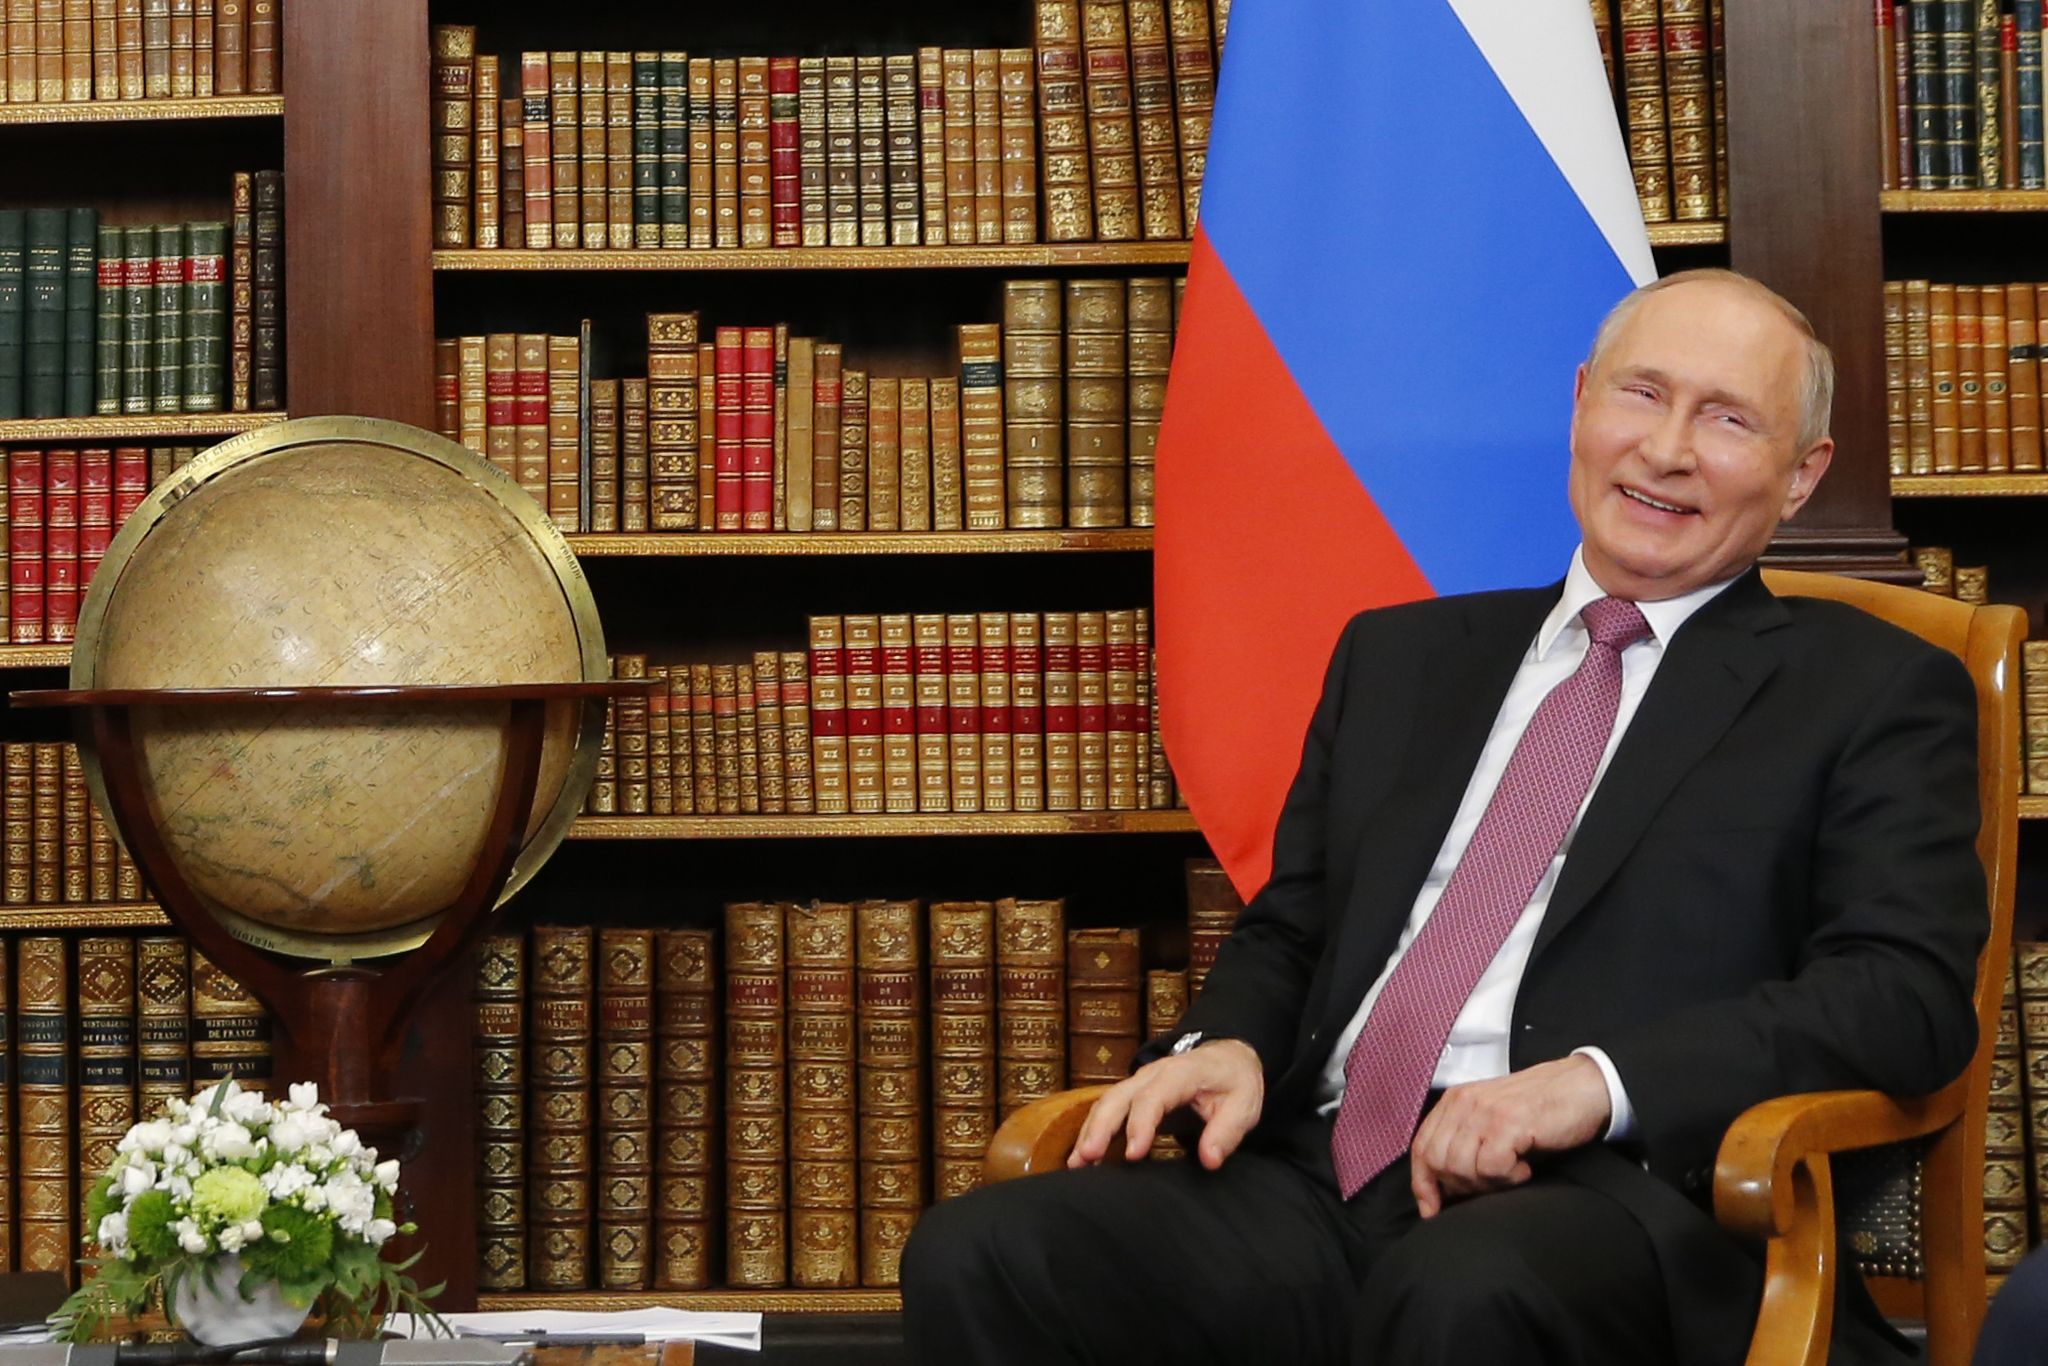 Der russische Präsident Wladimir Putin zeig sich amüsiert (Archivbild). (© Denis Balibouse/REUTERS/dpa)